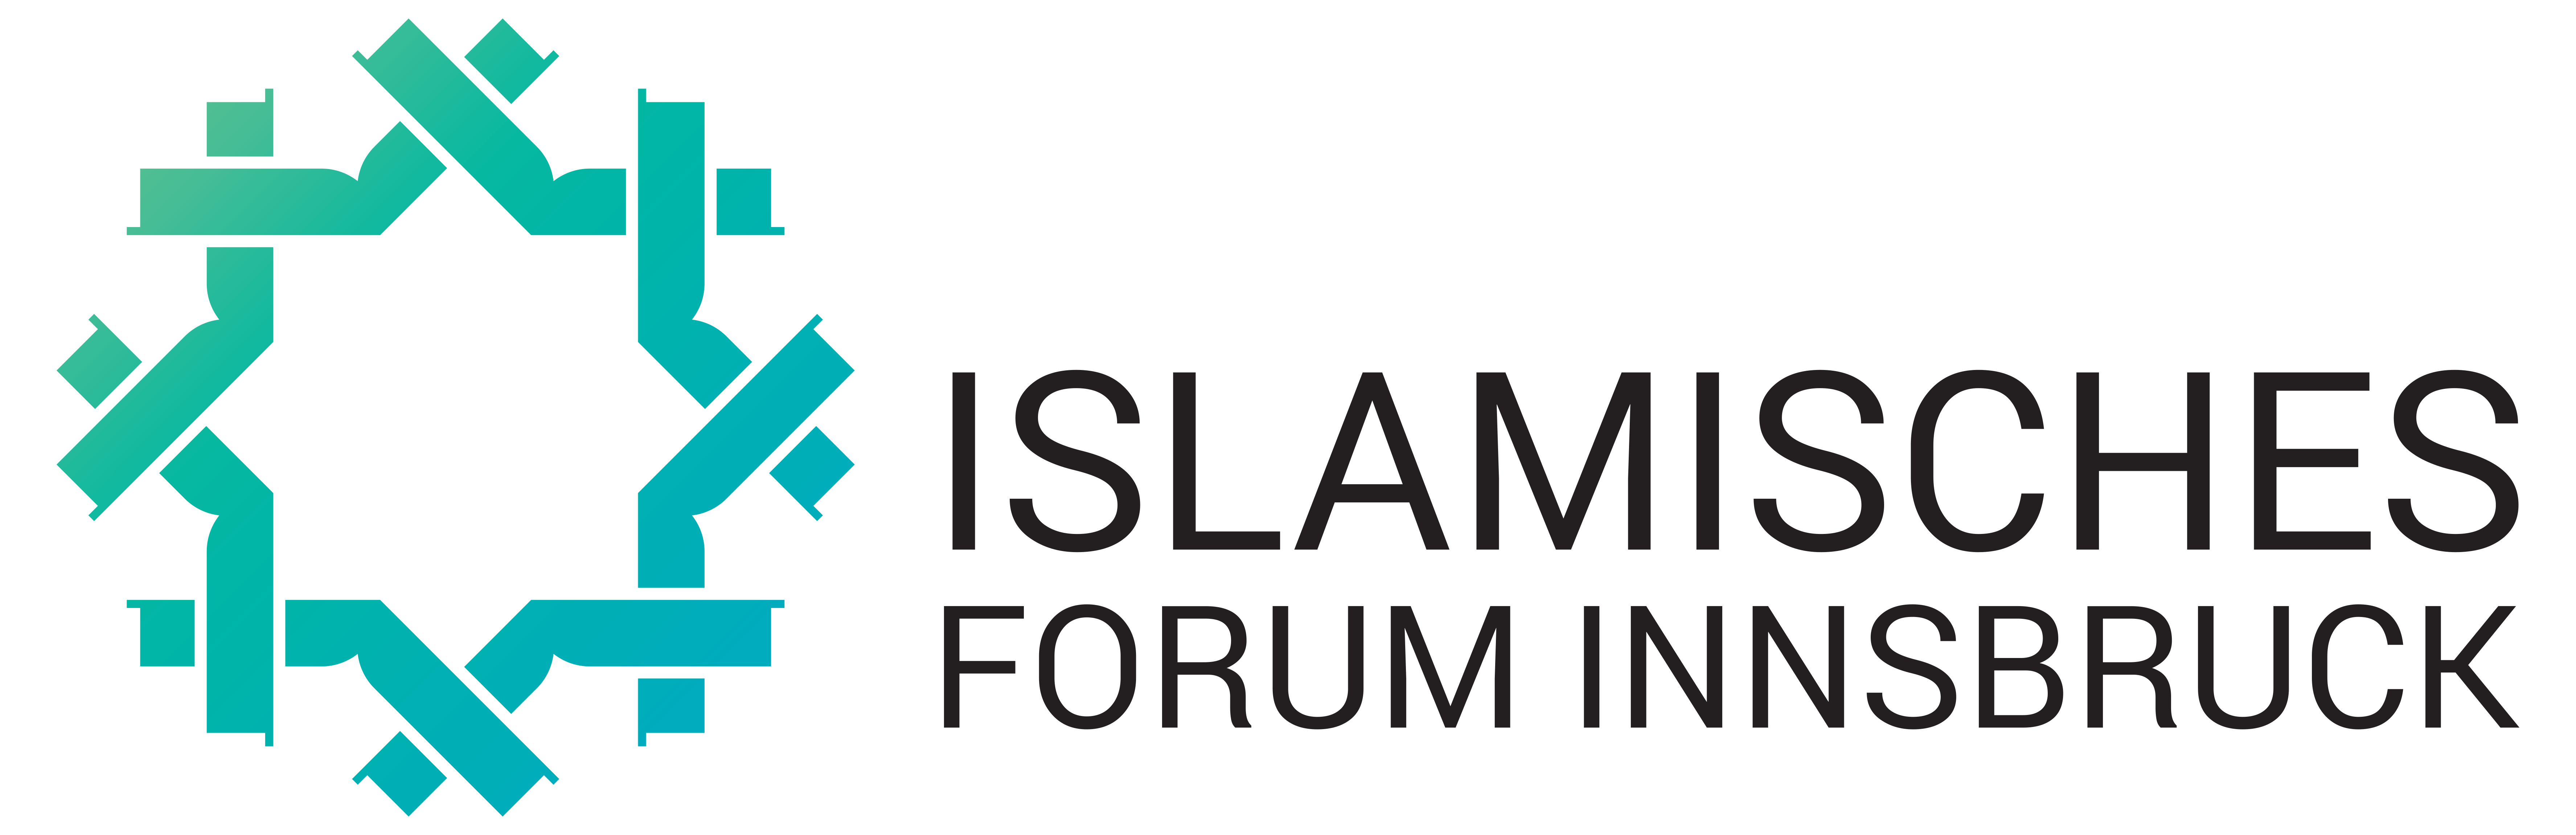 Islamisches Forum Innsbruck